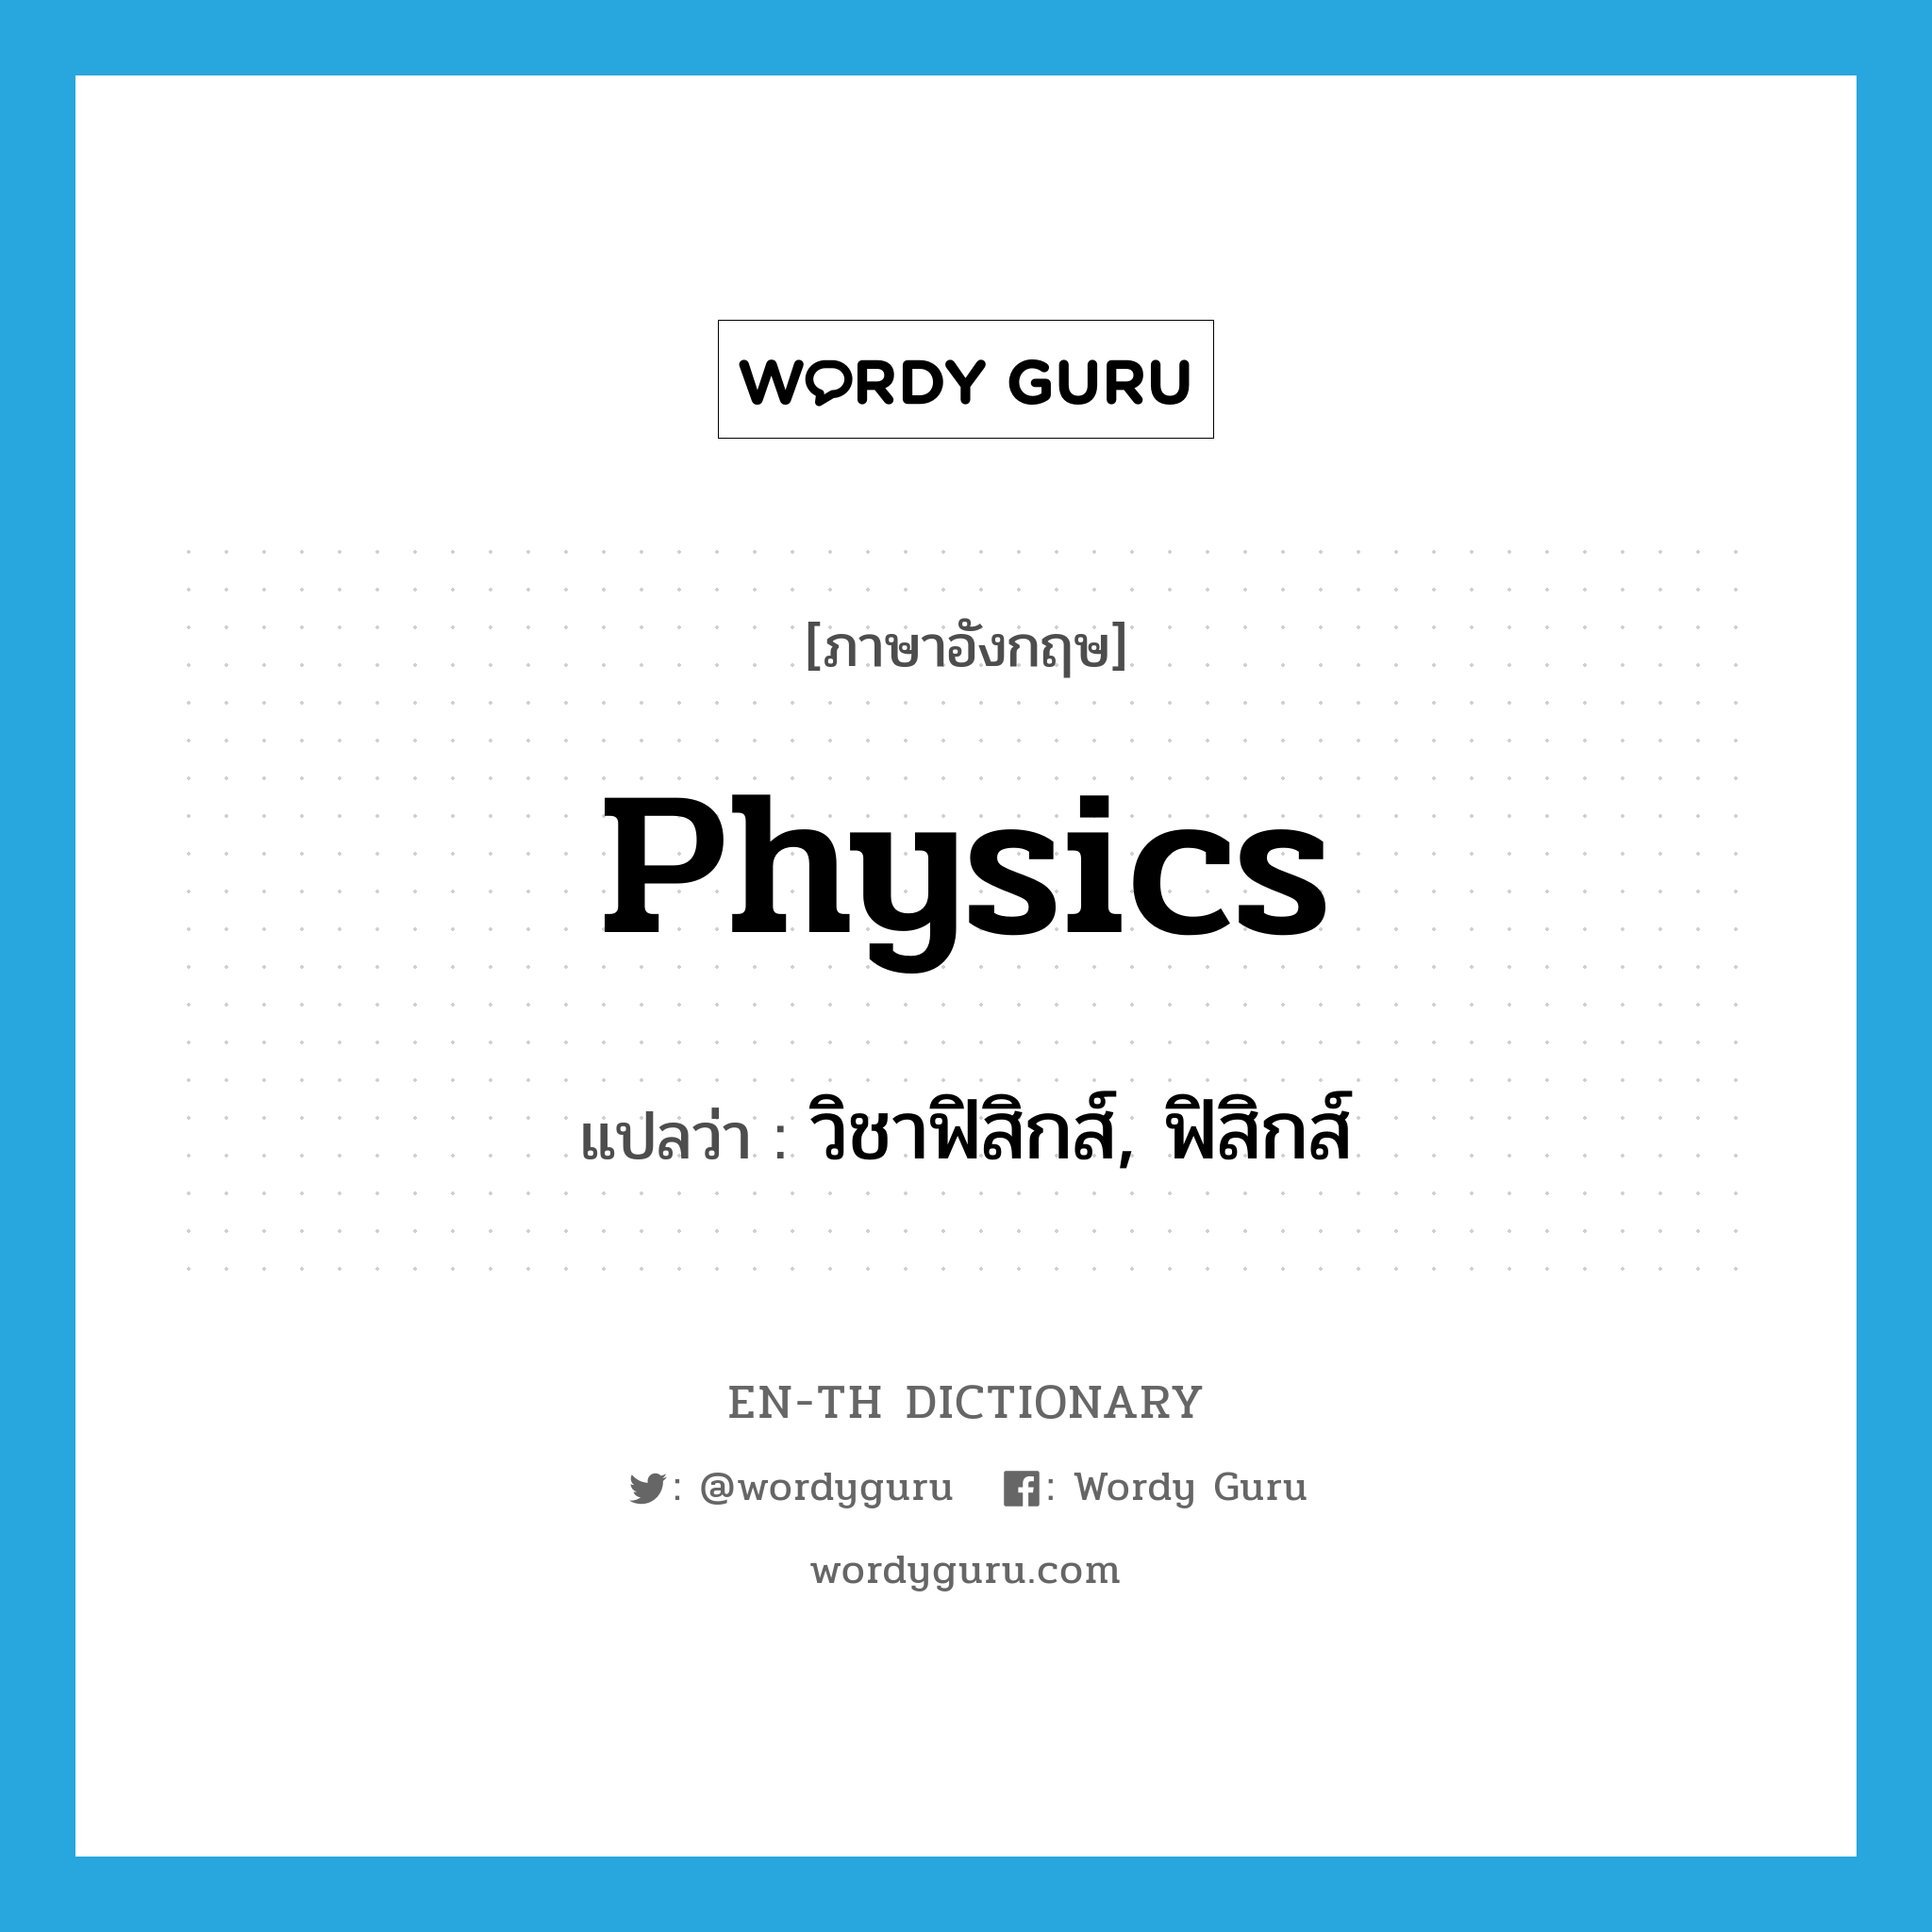 physics แปลว่า?, คำศัพท์ภาษาอังกฤษ physics แปลว่า วิชาฟิสิกส์, ฟิสิกส์ ประเภท N หมวด N